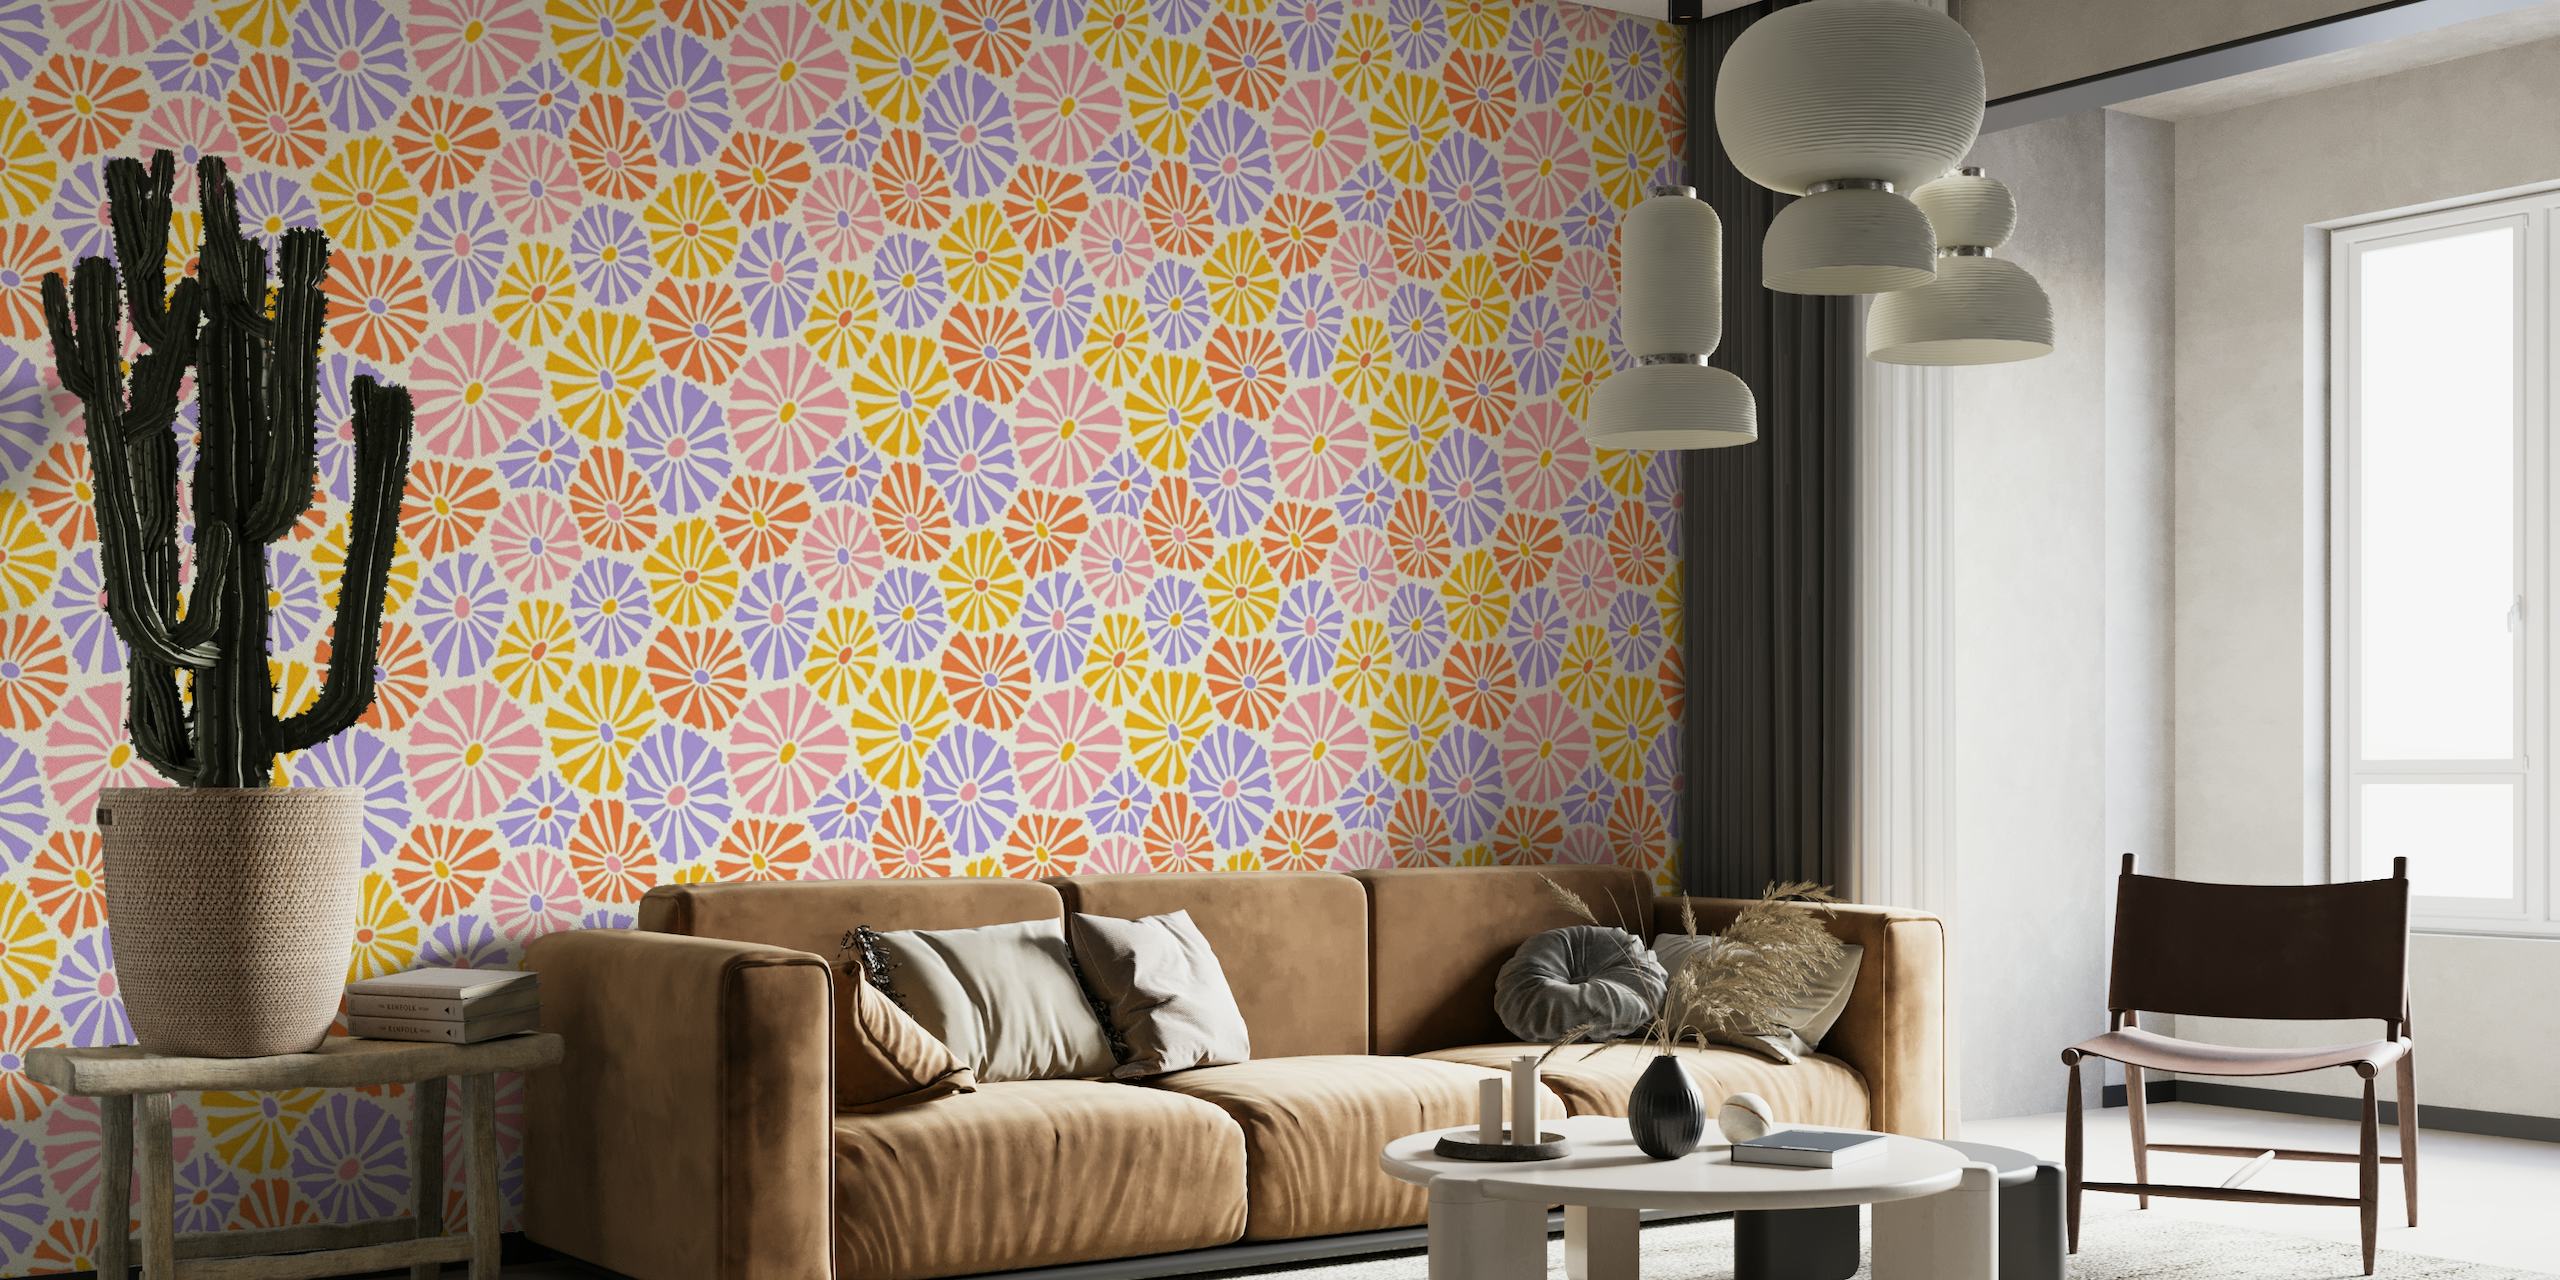 Retro-geïnspireerd fotobehang met kleurrijke madeliefjes in roze, oranje, geel en paars op een witte achtergrond.